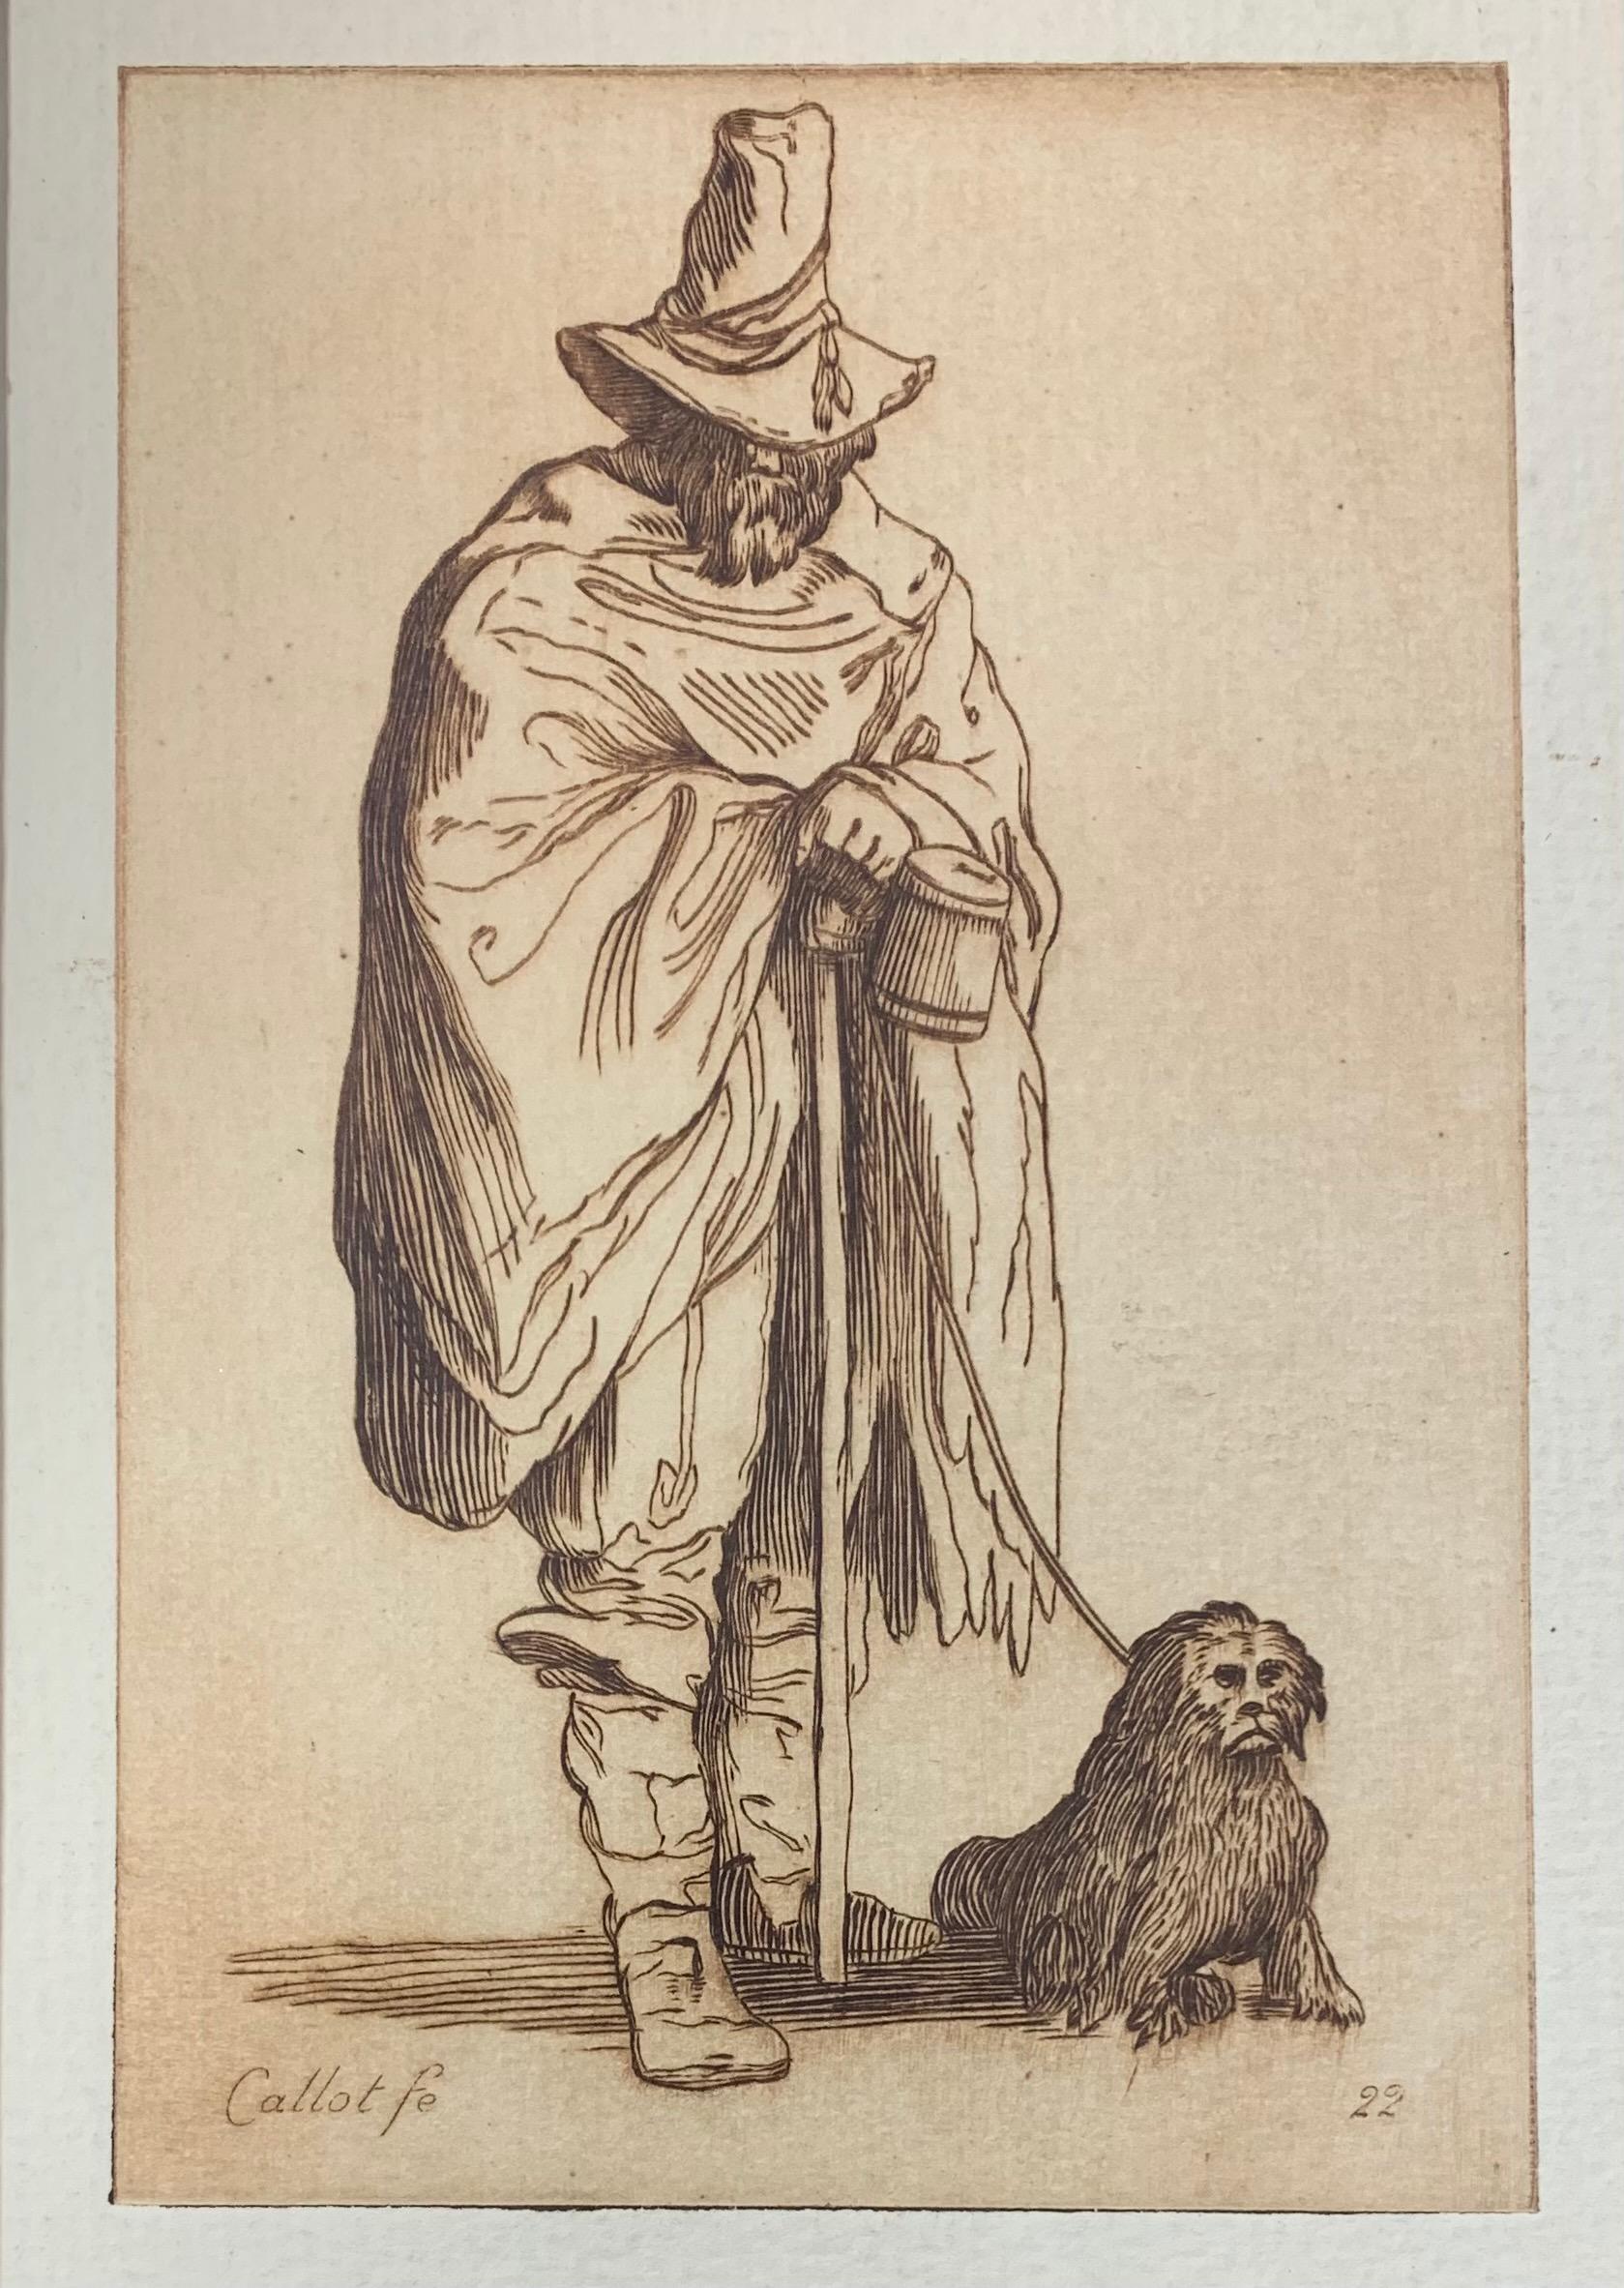 Jacques Callot Portrait Print - 17th Century Etching, Les Gueux Series, #22